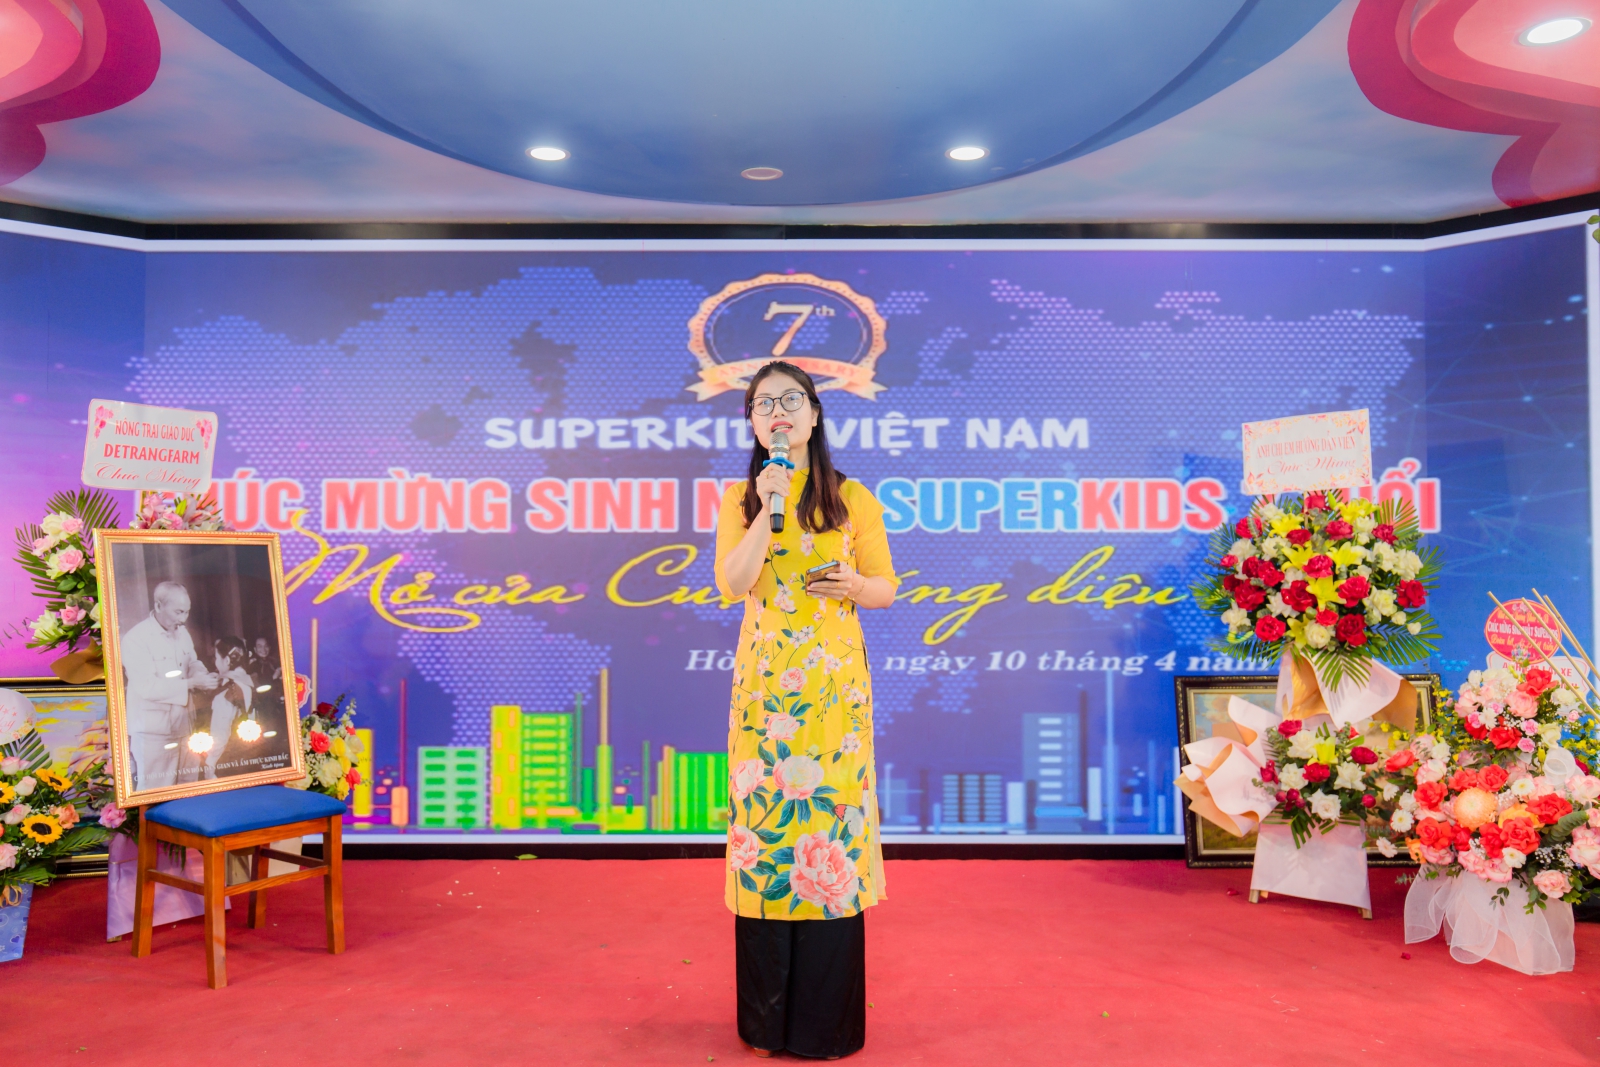 Bà Lê Thị Nhàn, giám đốc trung tâm lên phát biểu nhân ngày kỉ niệm thành lập trung tâm phát triển tài năng Superkids Việt Nam